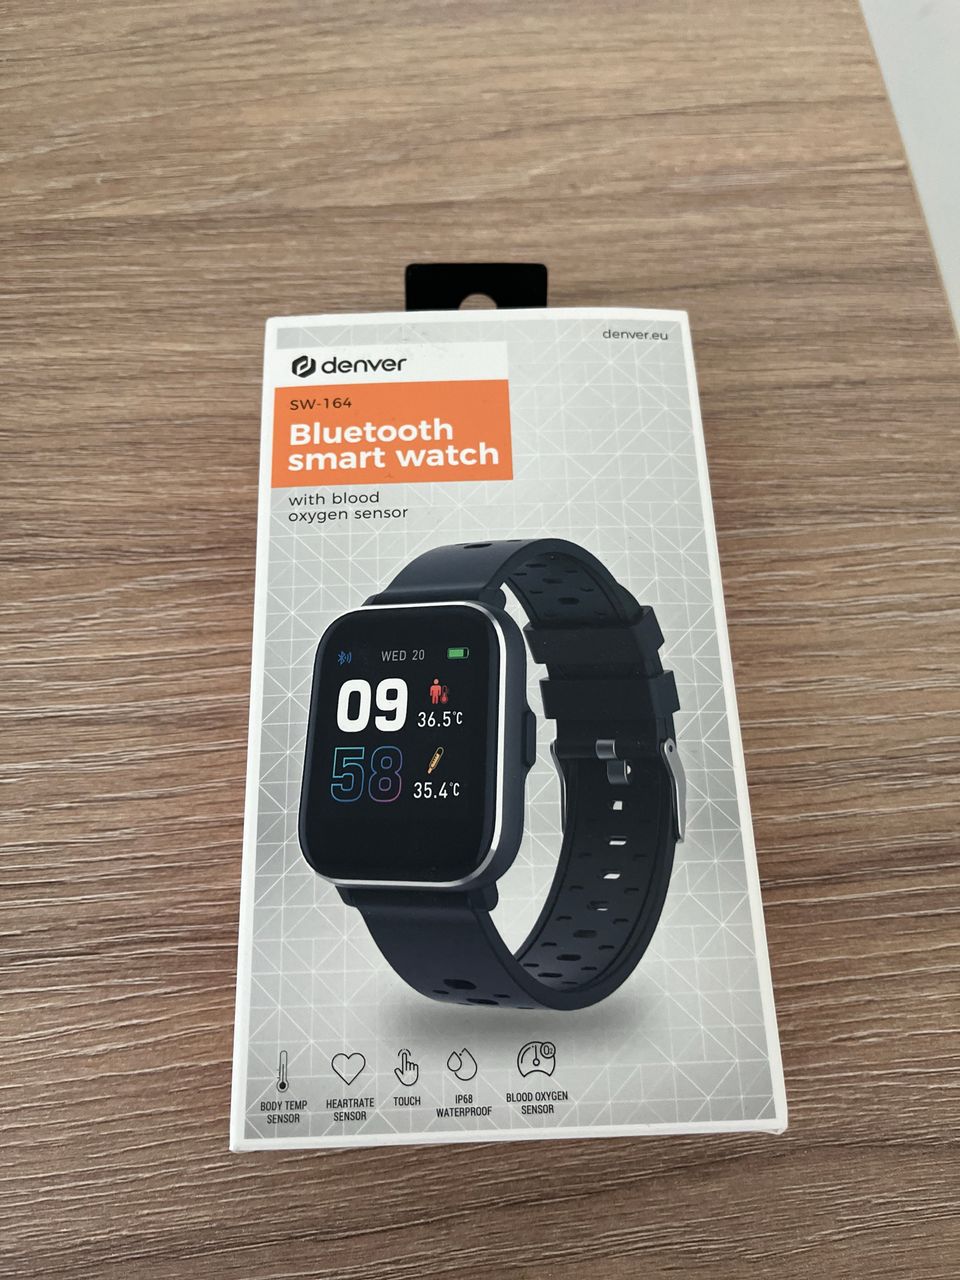 Denver Bluetooth smart watch